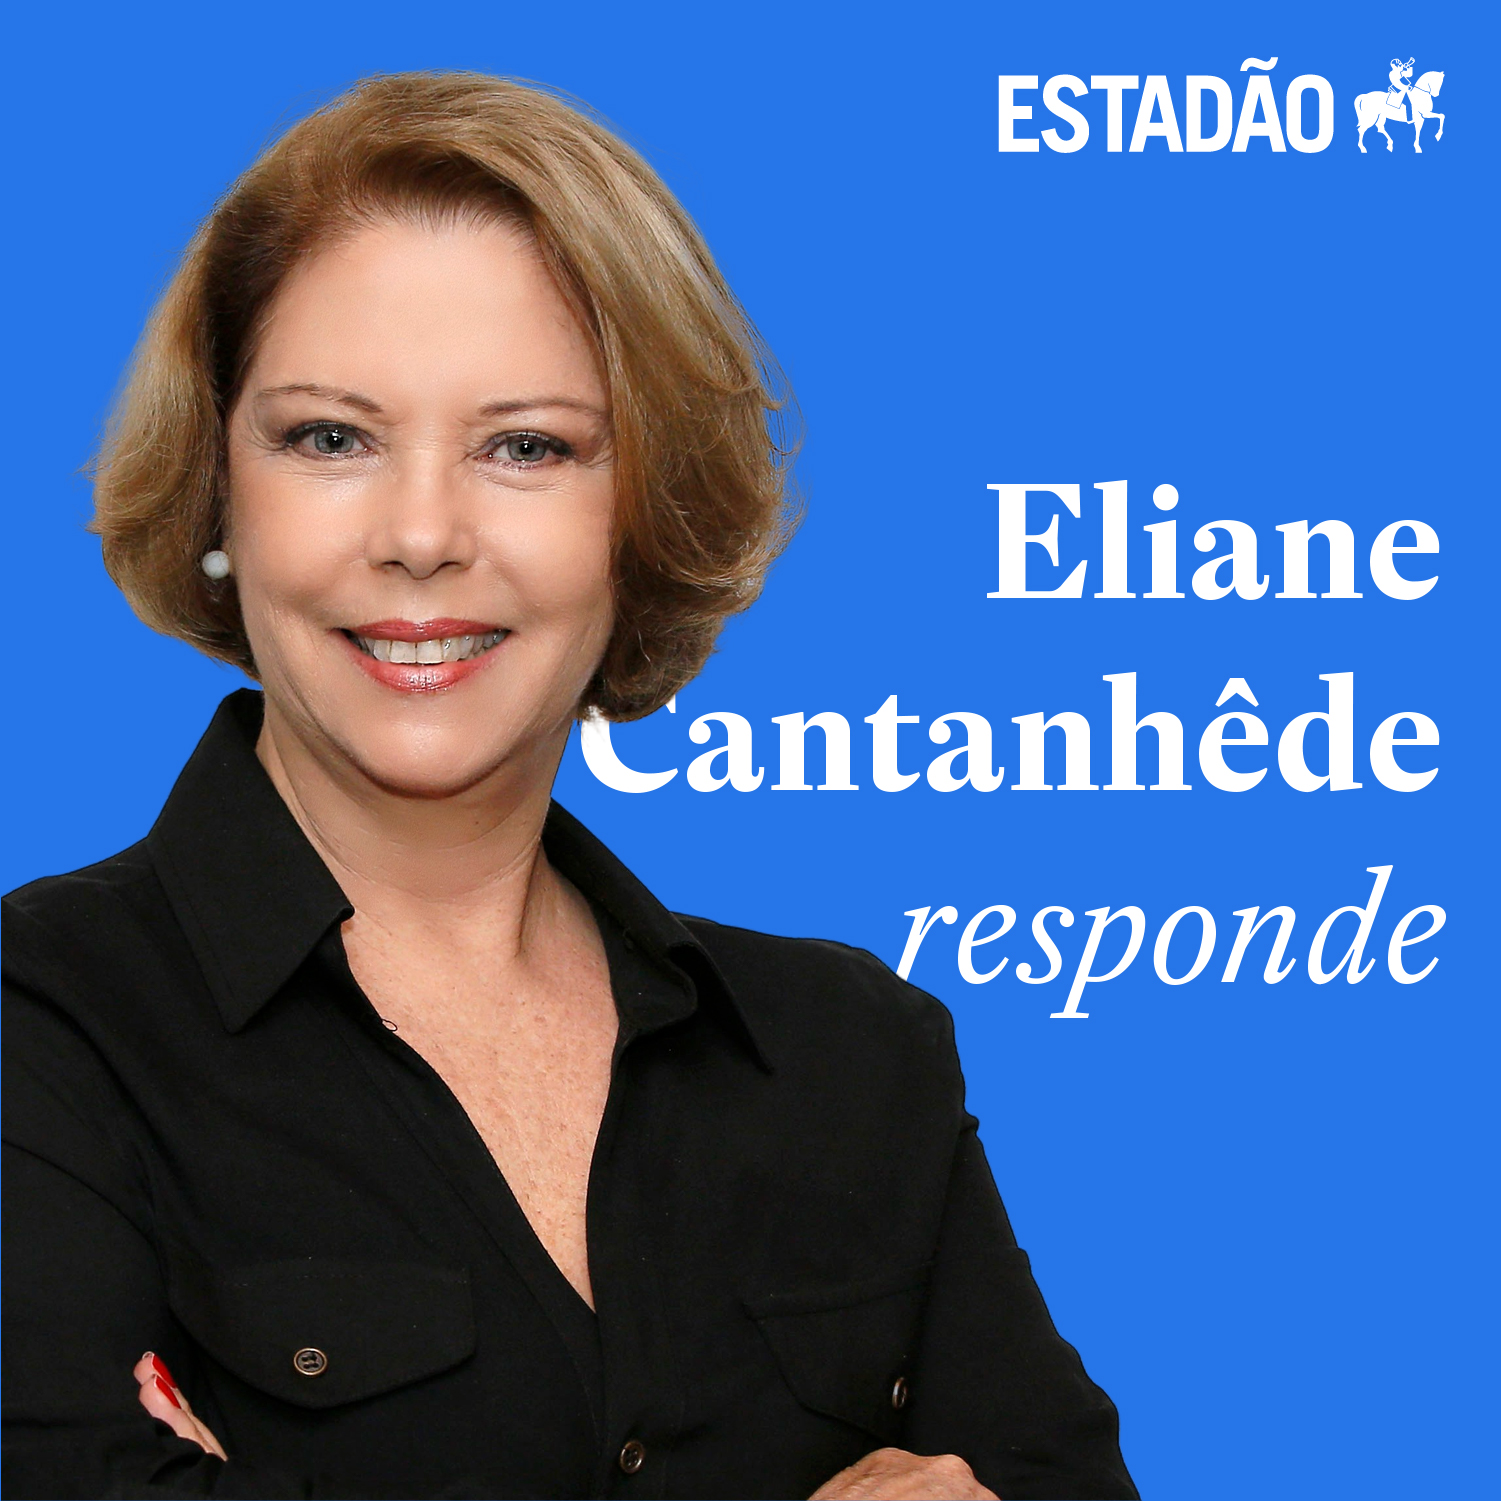 Eliane: “A pandemia fica cada dia mais grave, mas o ministro da Saúde vive em um mundo paralelo”